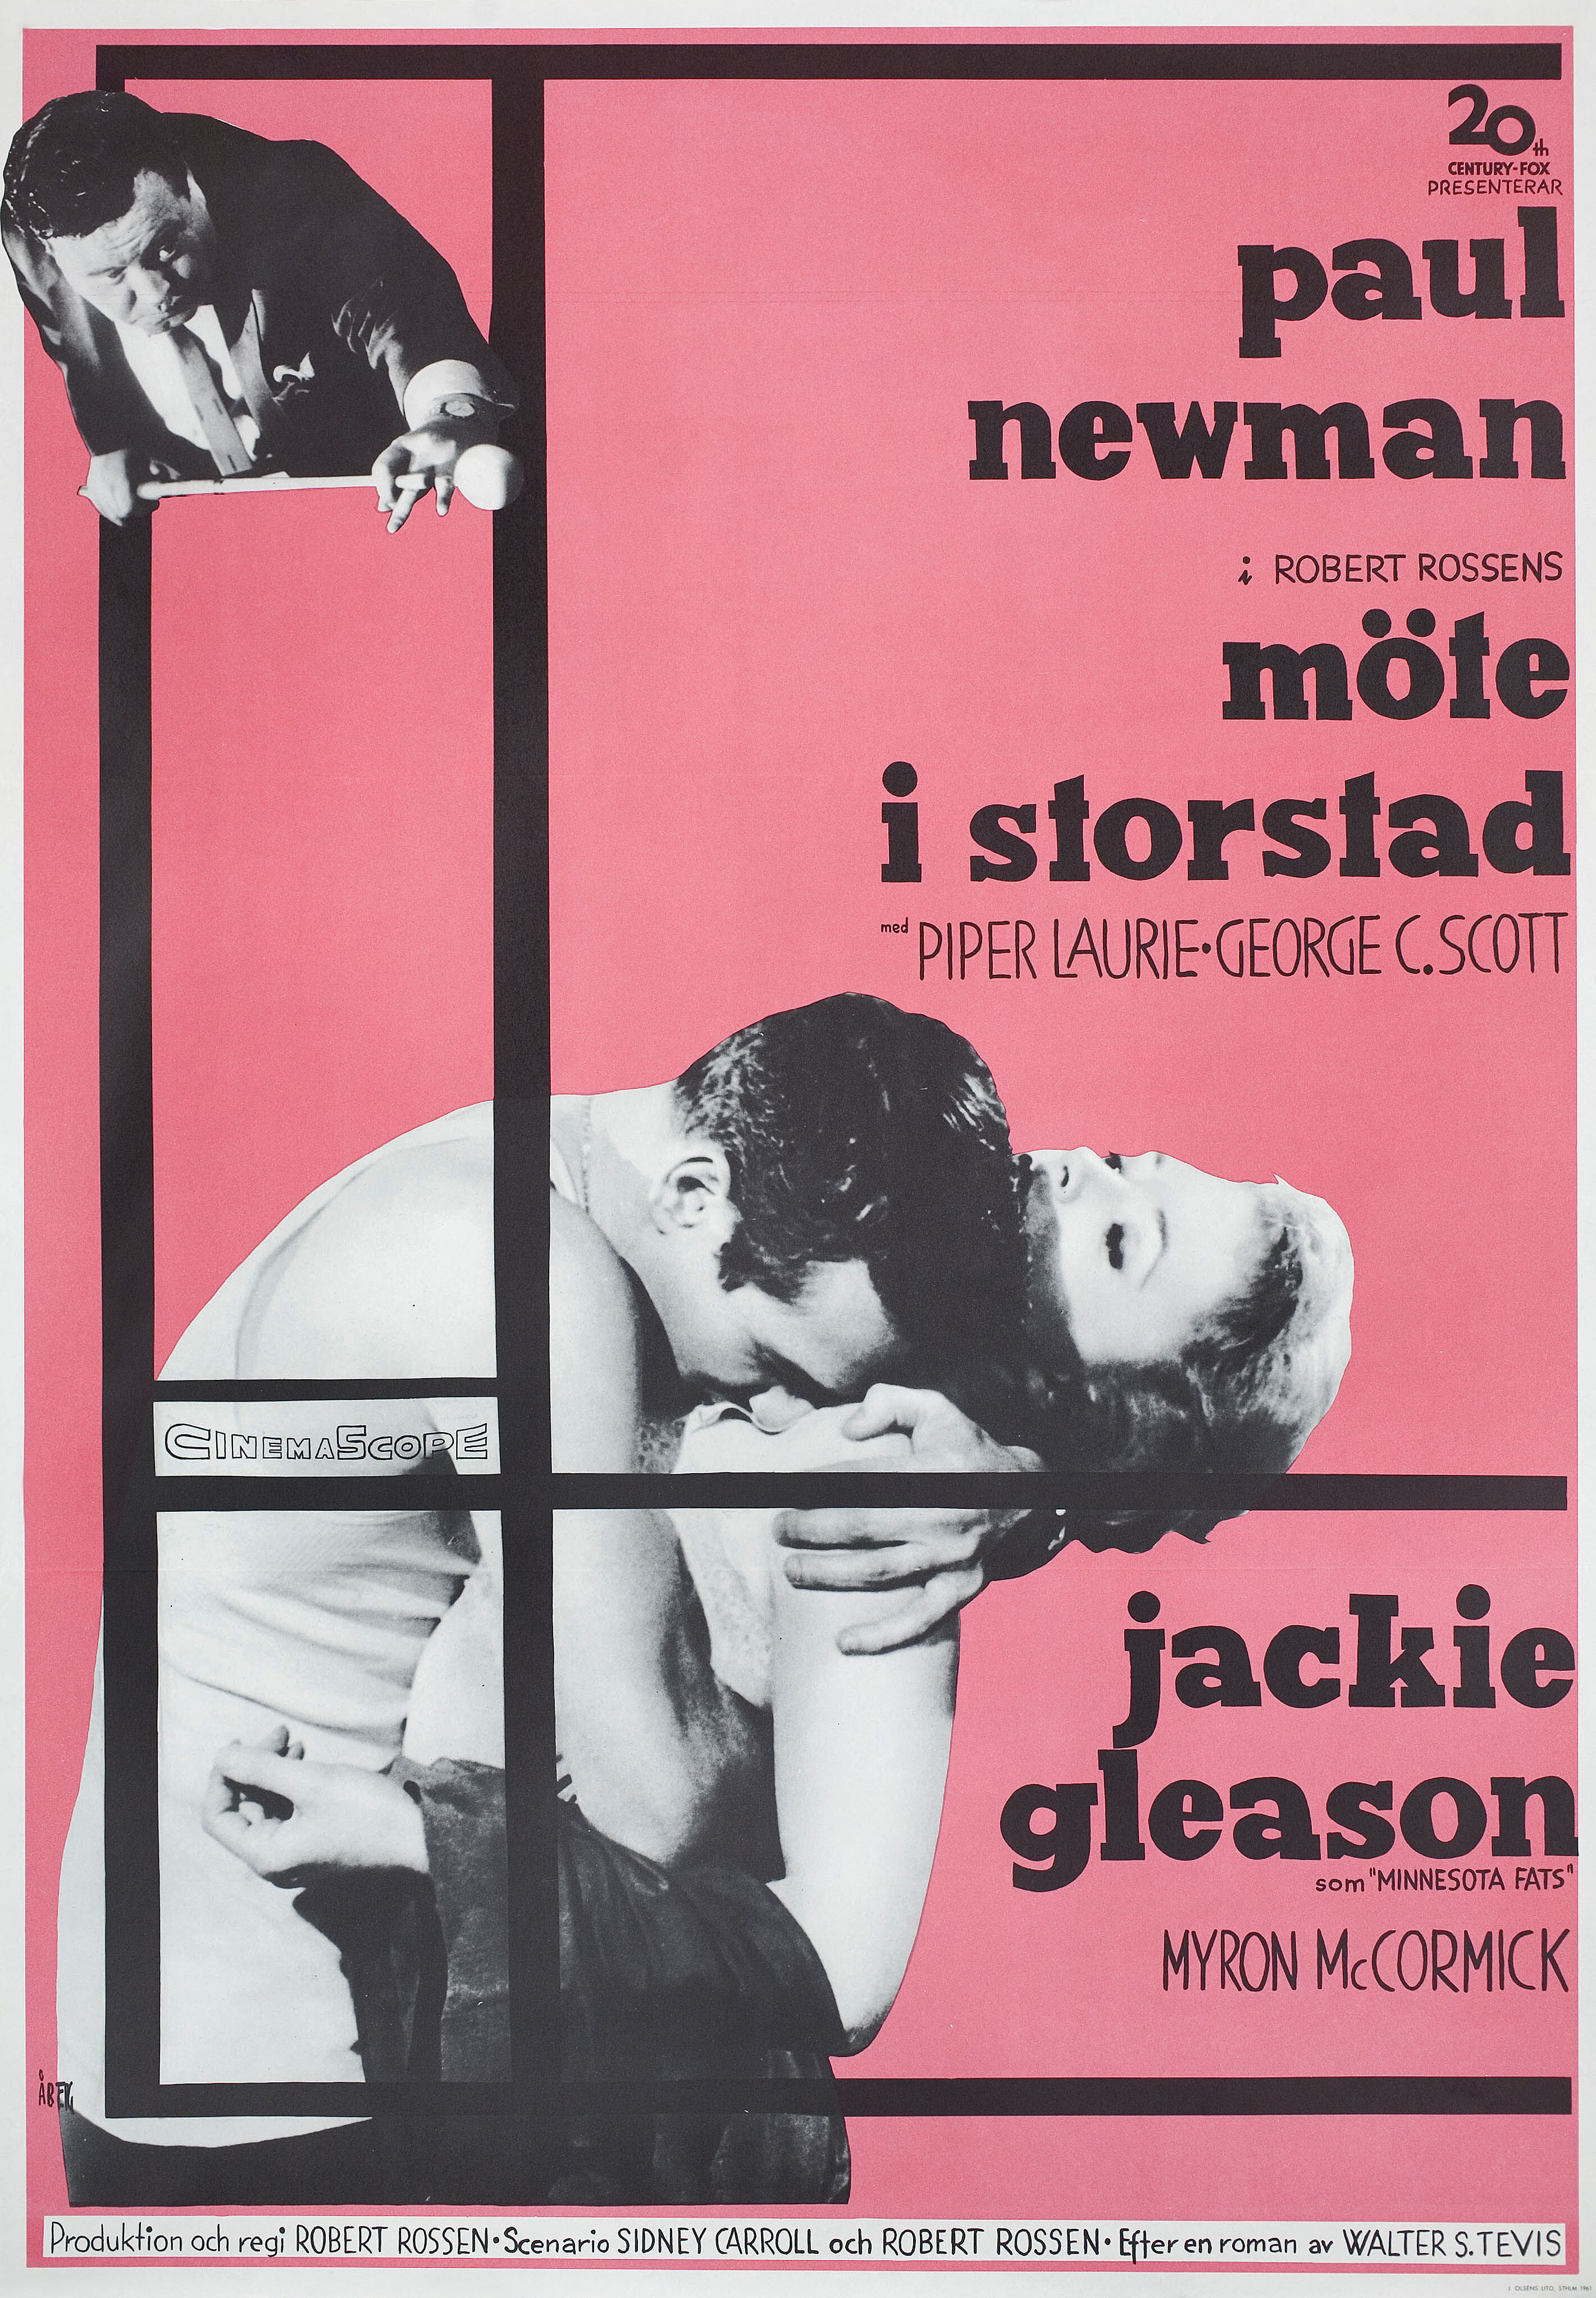 Мошенник (The Hustler, 1961), режиссёр Роберт Россен, шведский постер к фильму, автор Госта Аберг (графический дизайн, 1961 год)